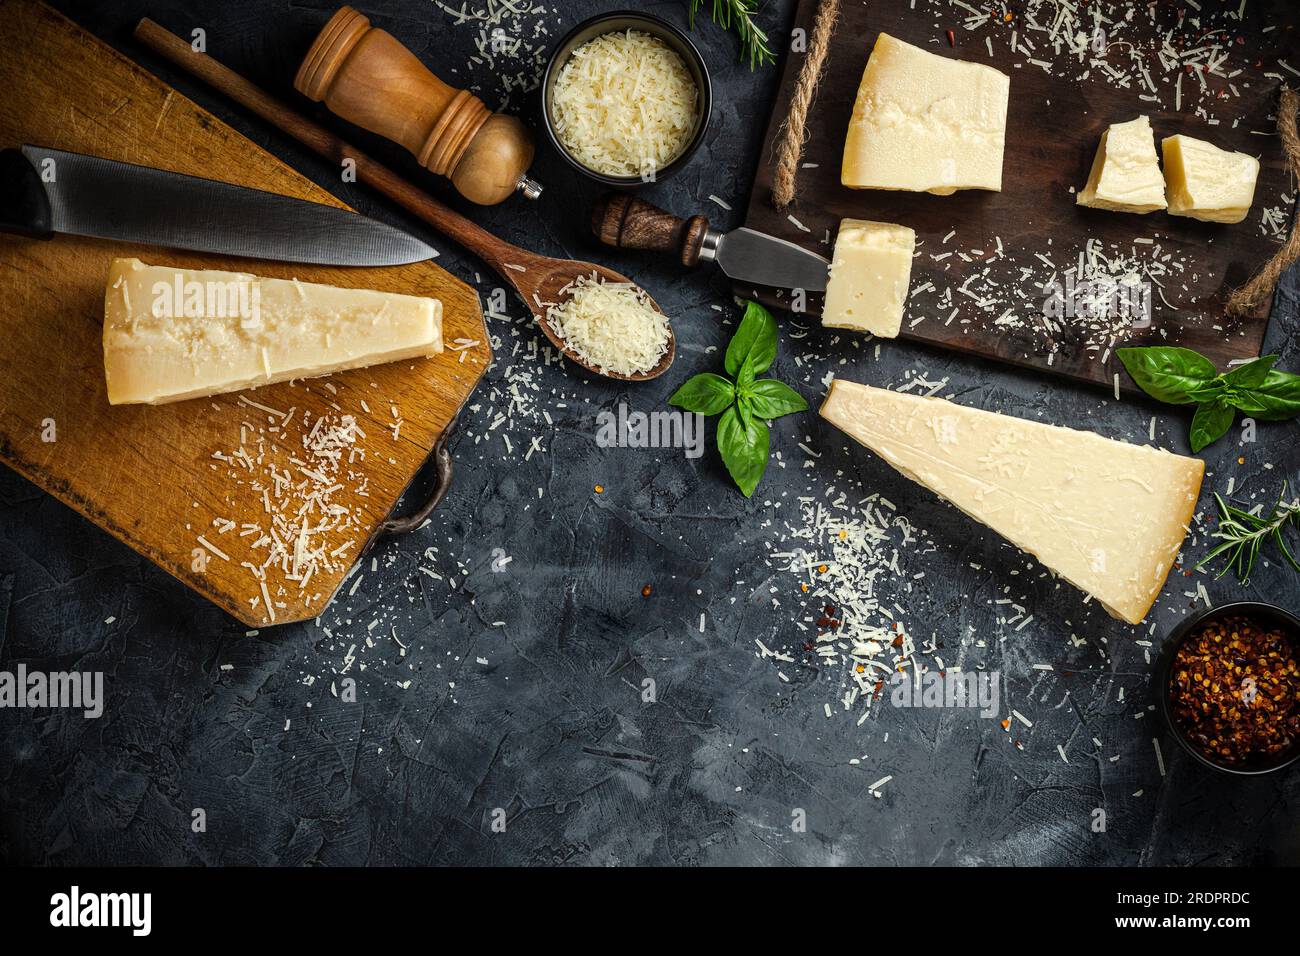 Jeu de fromages à pâte dure avec couteaux à fromage sur fond de pierre noire. Parmesan. Vue de dessus. Espace libre pour votre texte. Banque D'Images